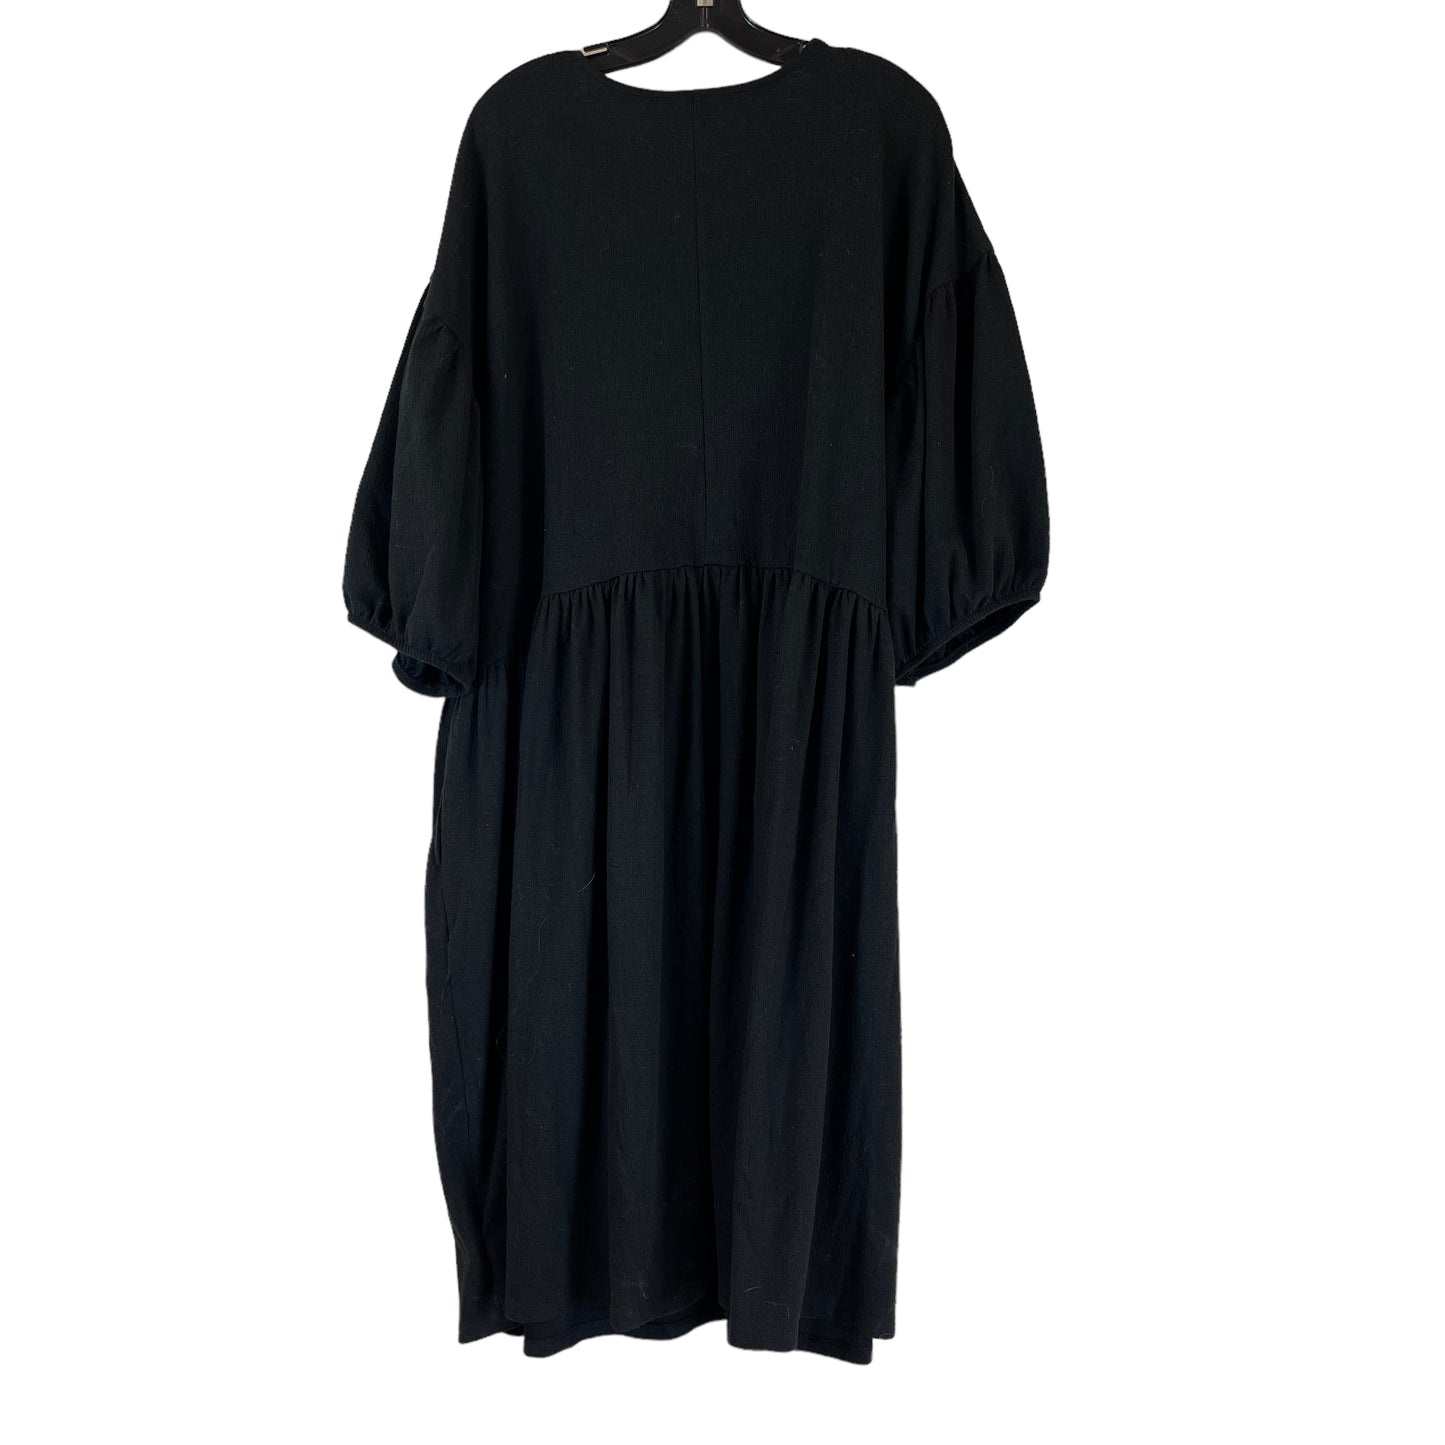 Dress Casual Midi By Terra & Sky  Size: 3X